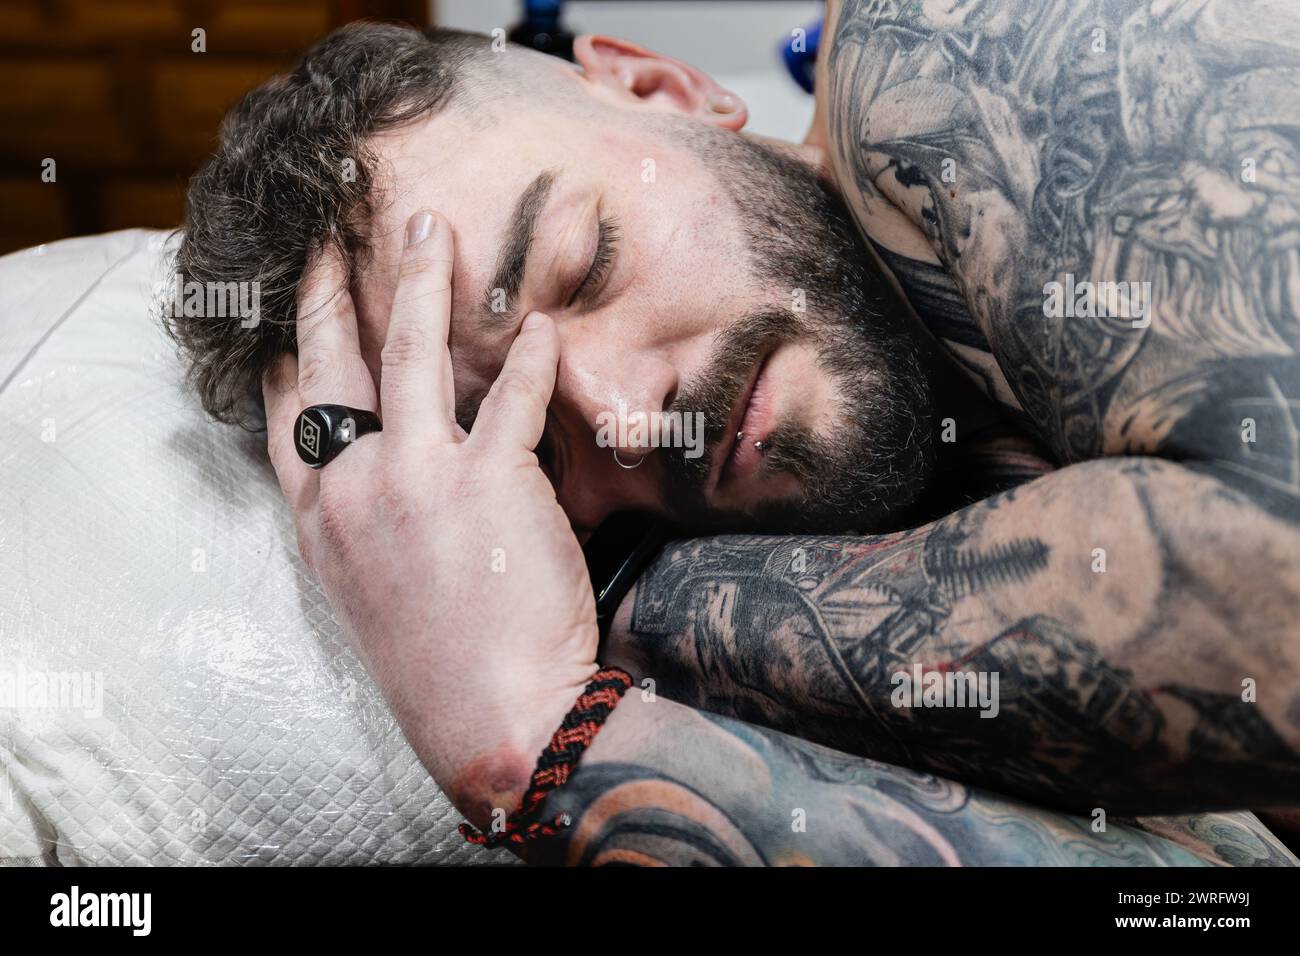 Horizontales Foto ein mit Tattoos bedeckter Mann nimmt sich einen Moment Zeit, um sich auszuruhen. Seine Hand hüllt sanft seinen Kopf und verkörpert die Geduld und Ausdauer, mich zu holen Stockfoto